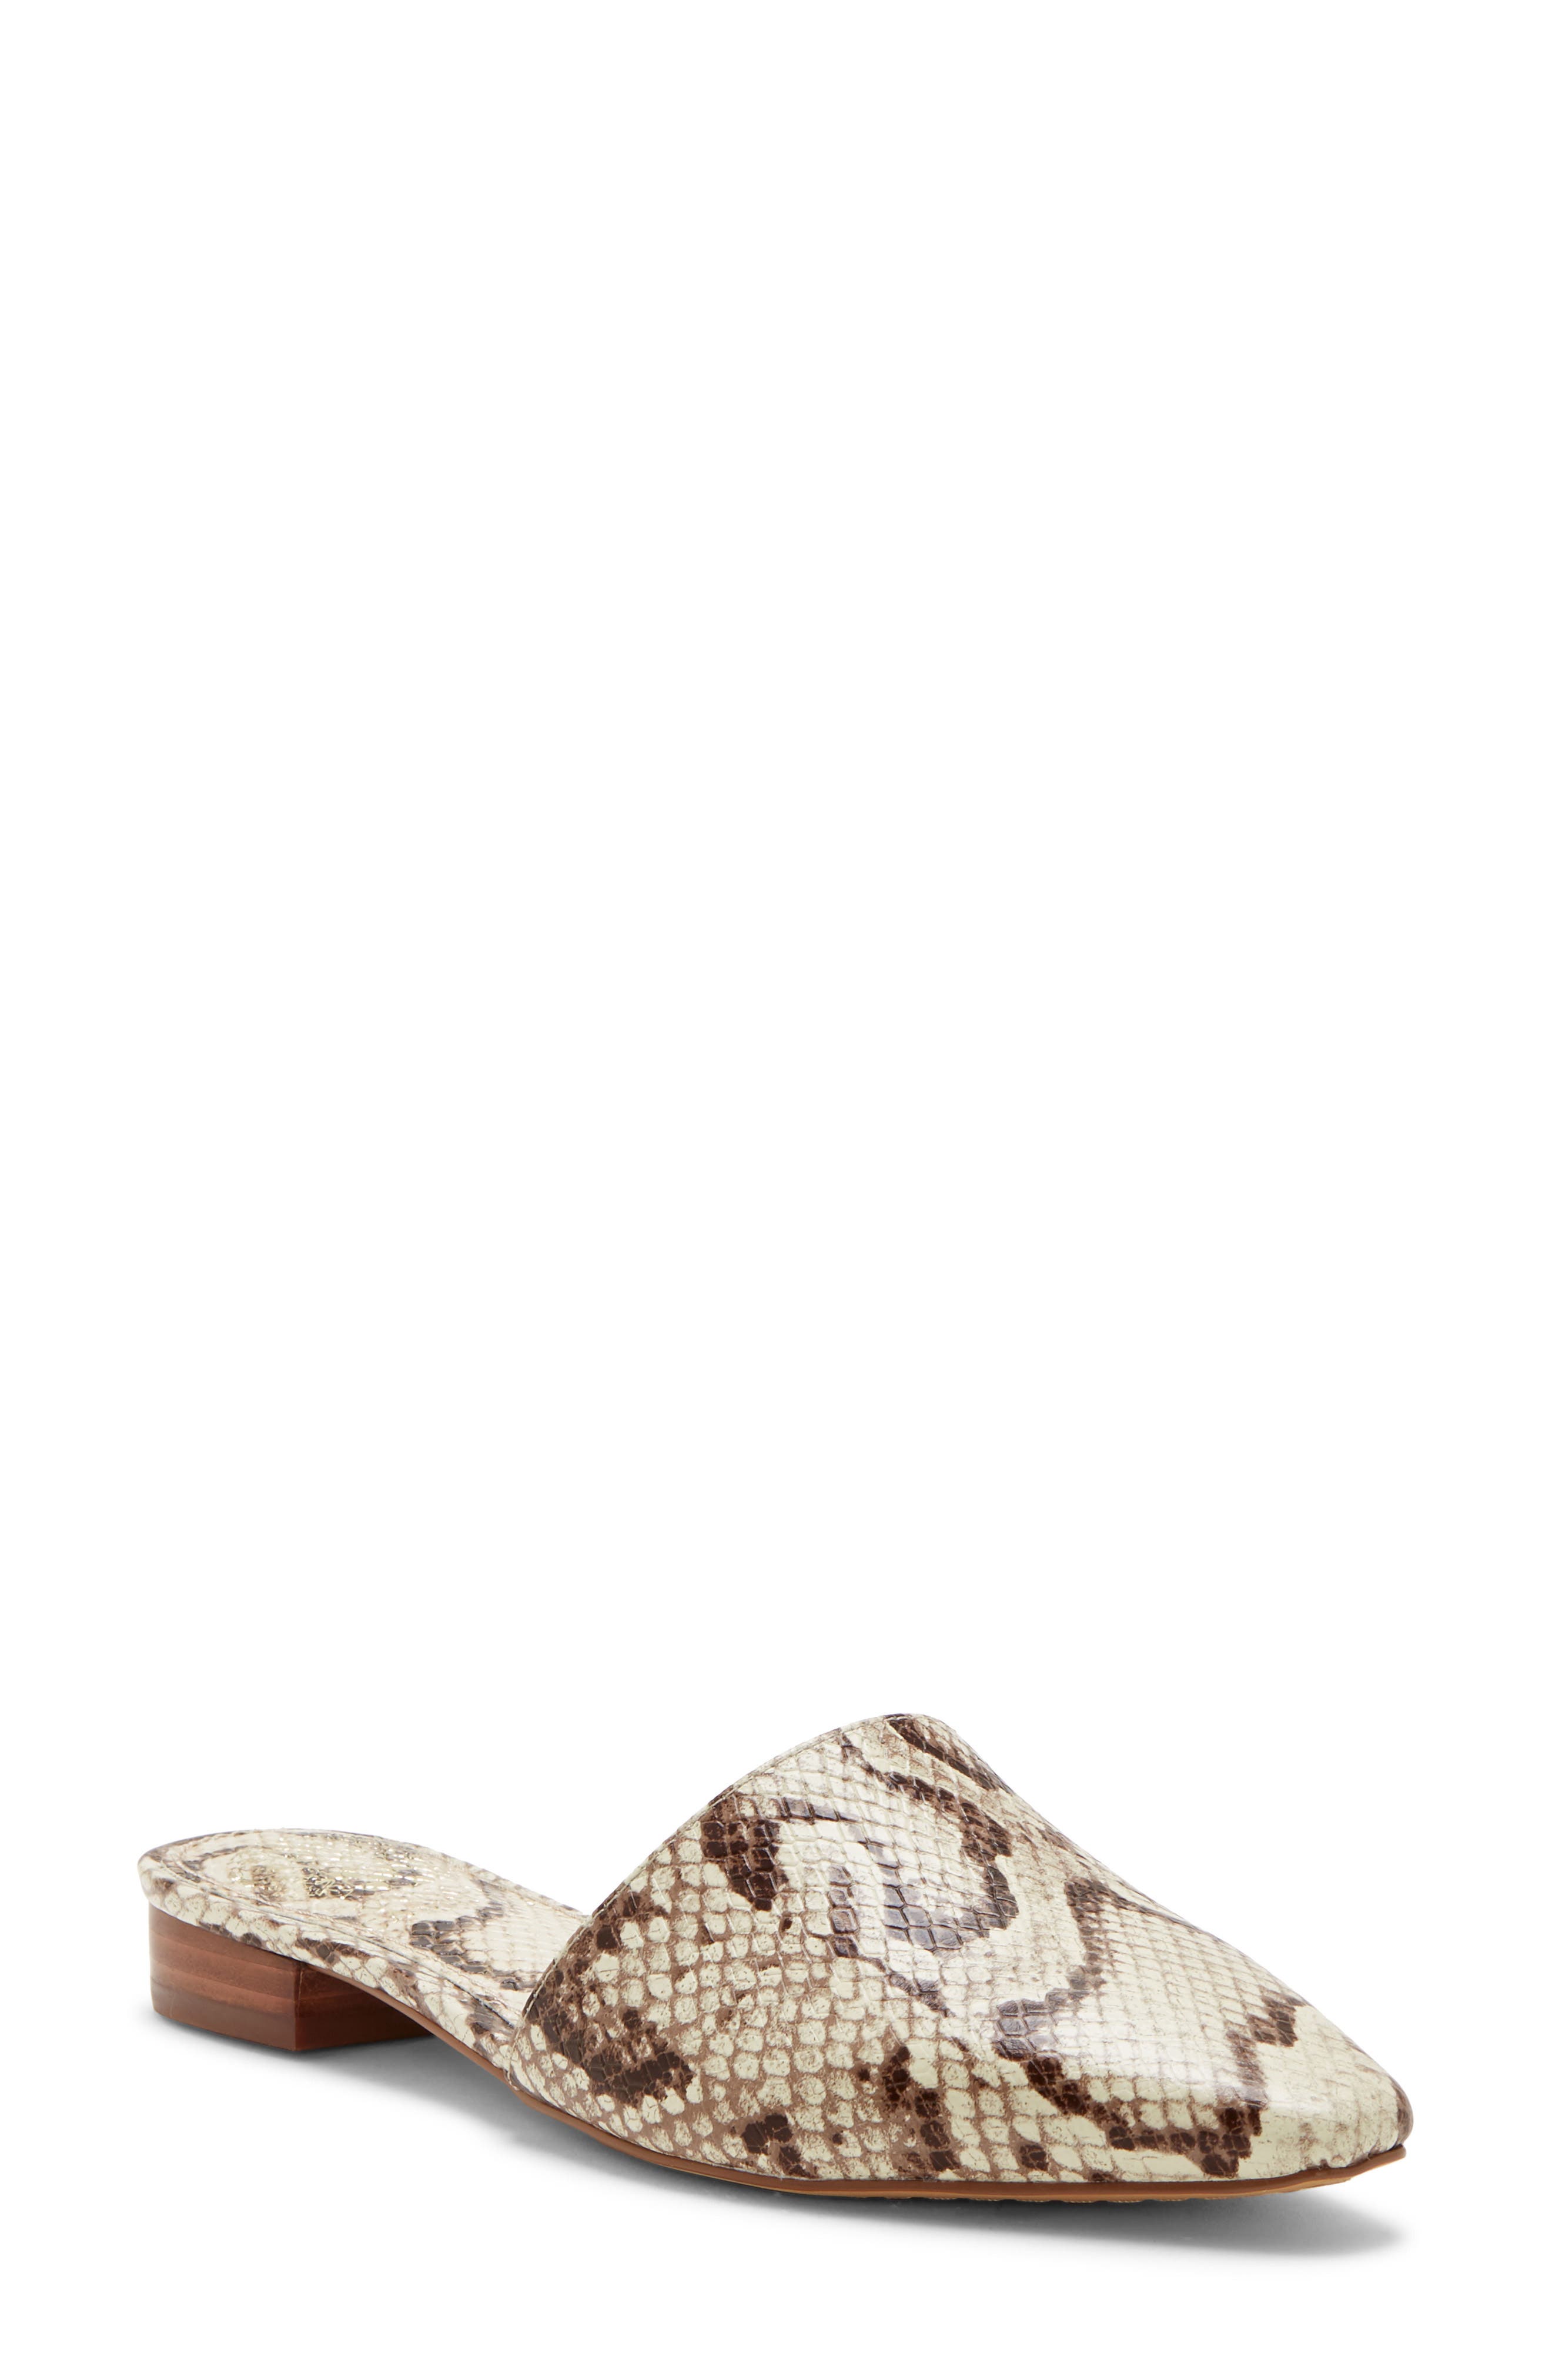 leopard print shoes size 12